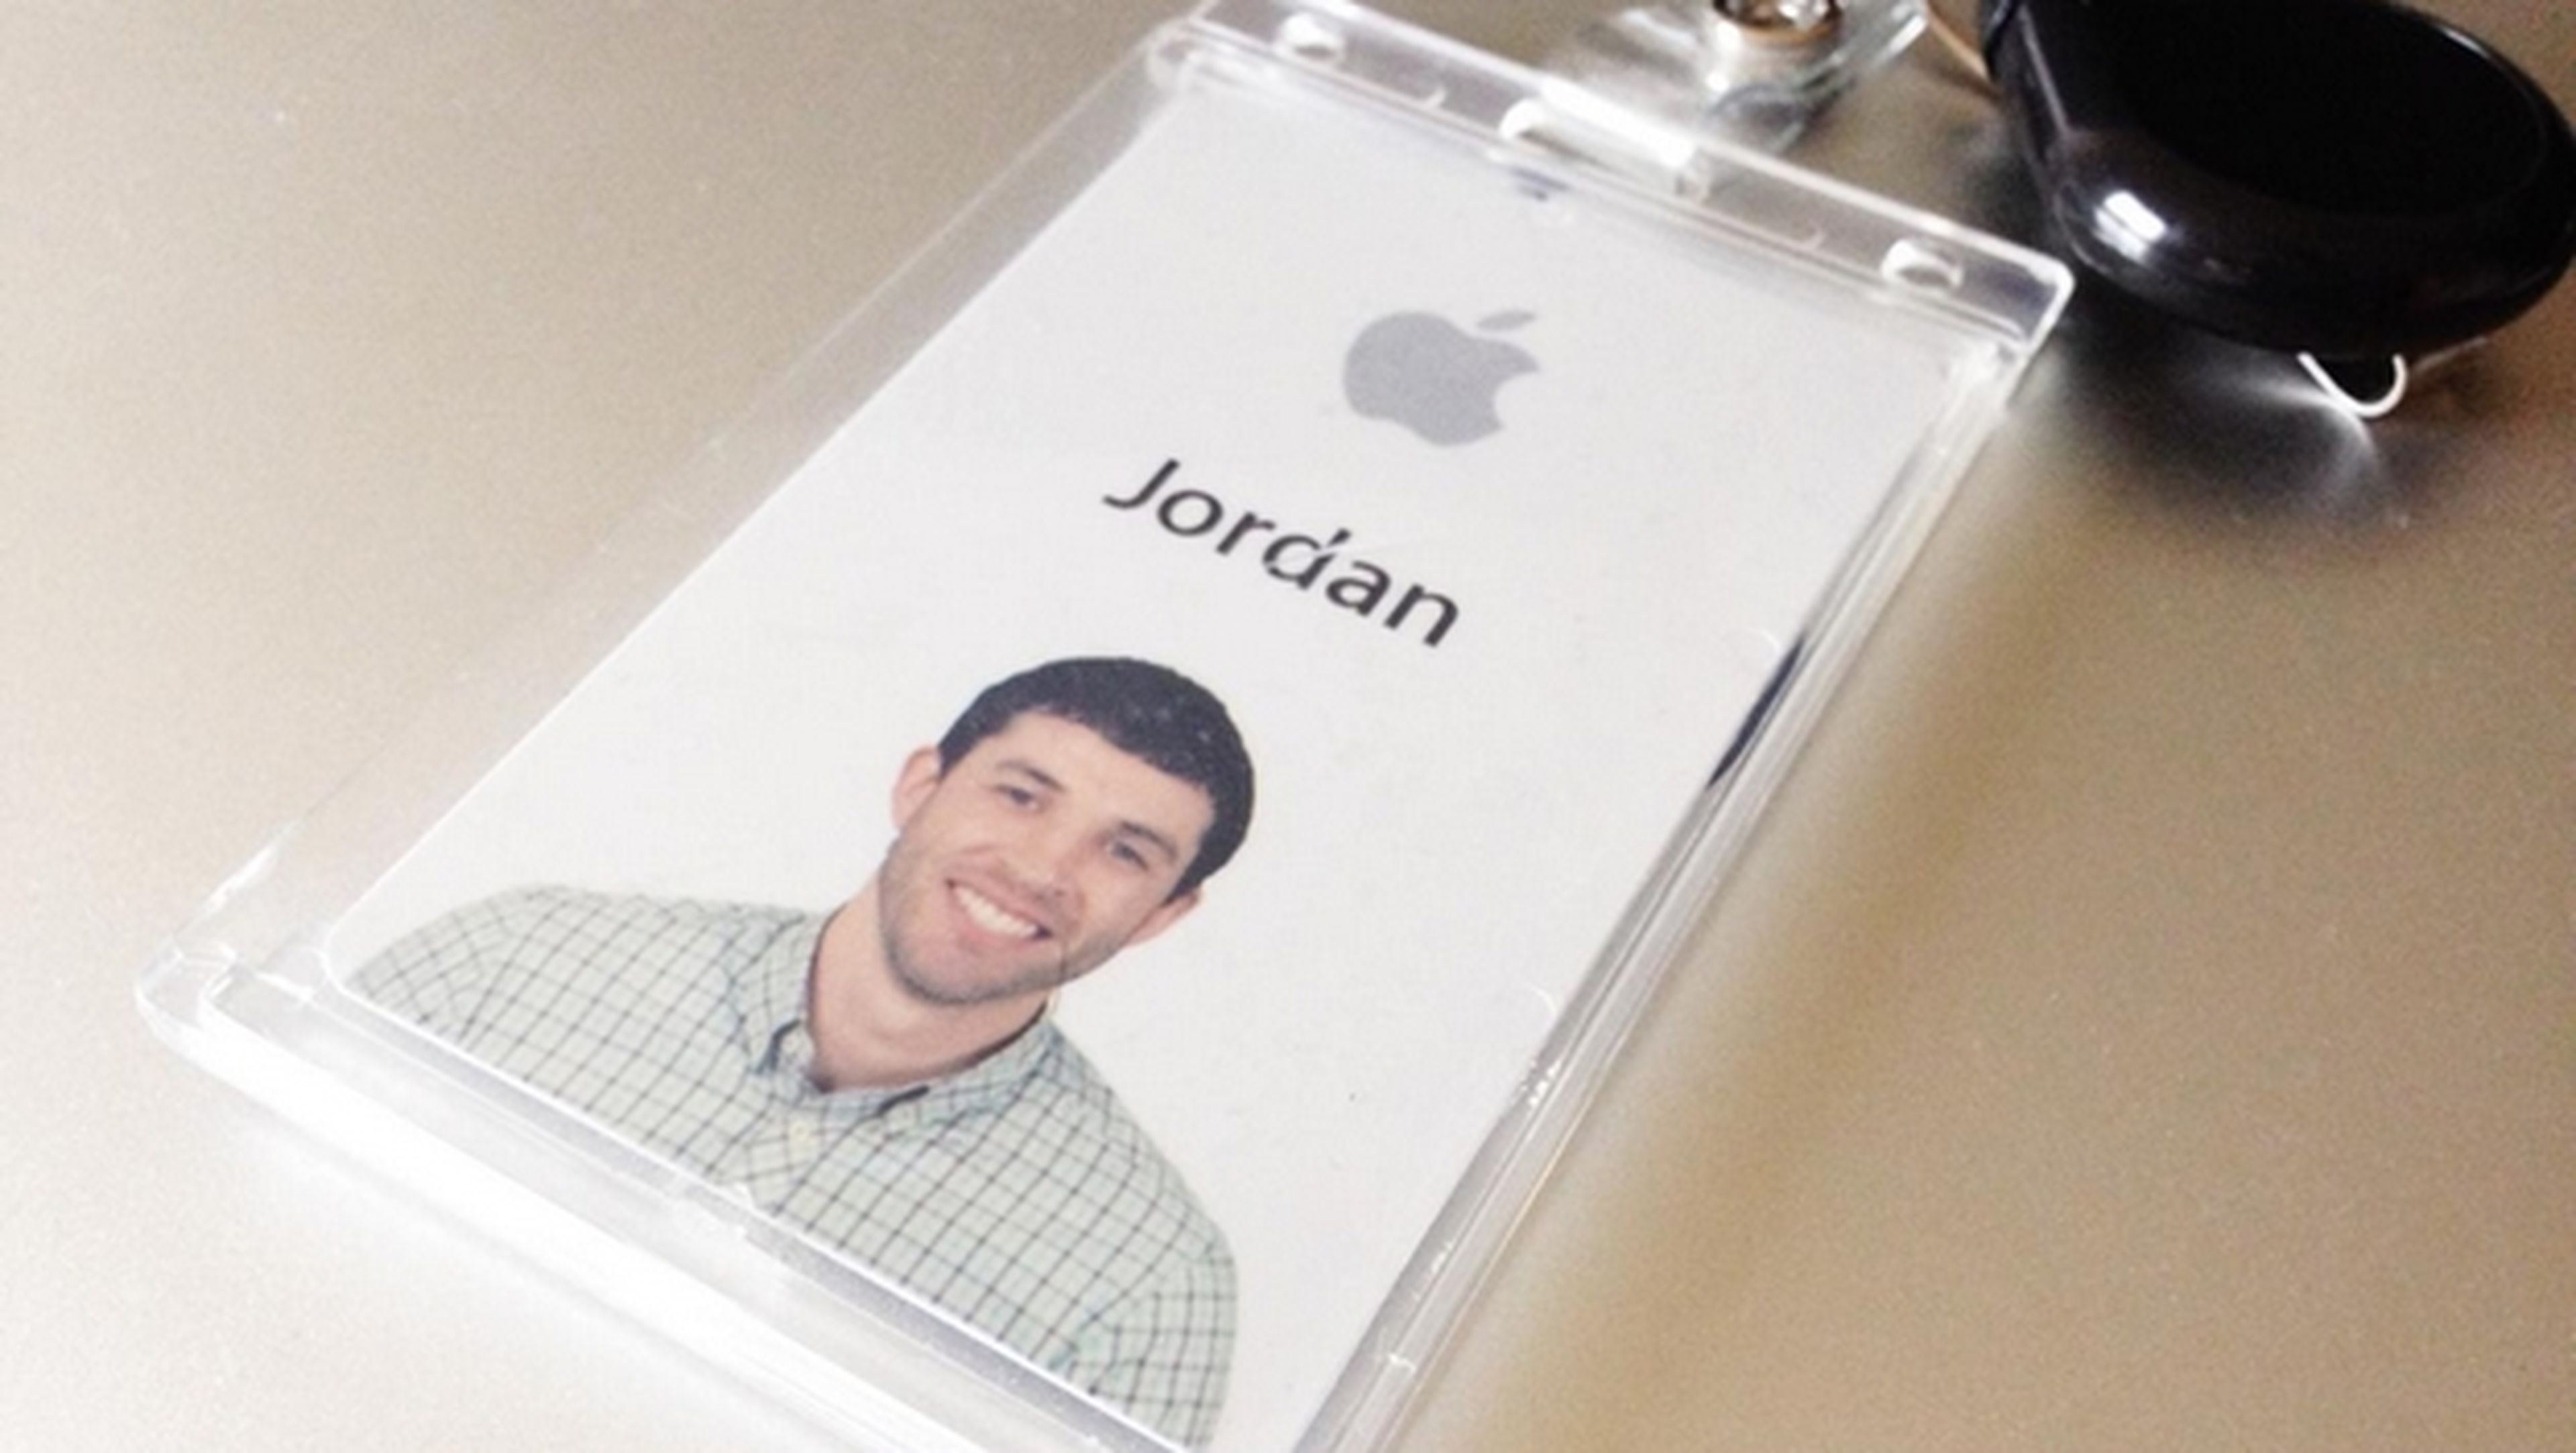 Jordan Price cuenta su negativa experiencia de trabajar en Apple